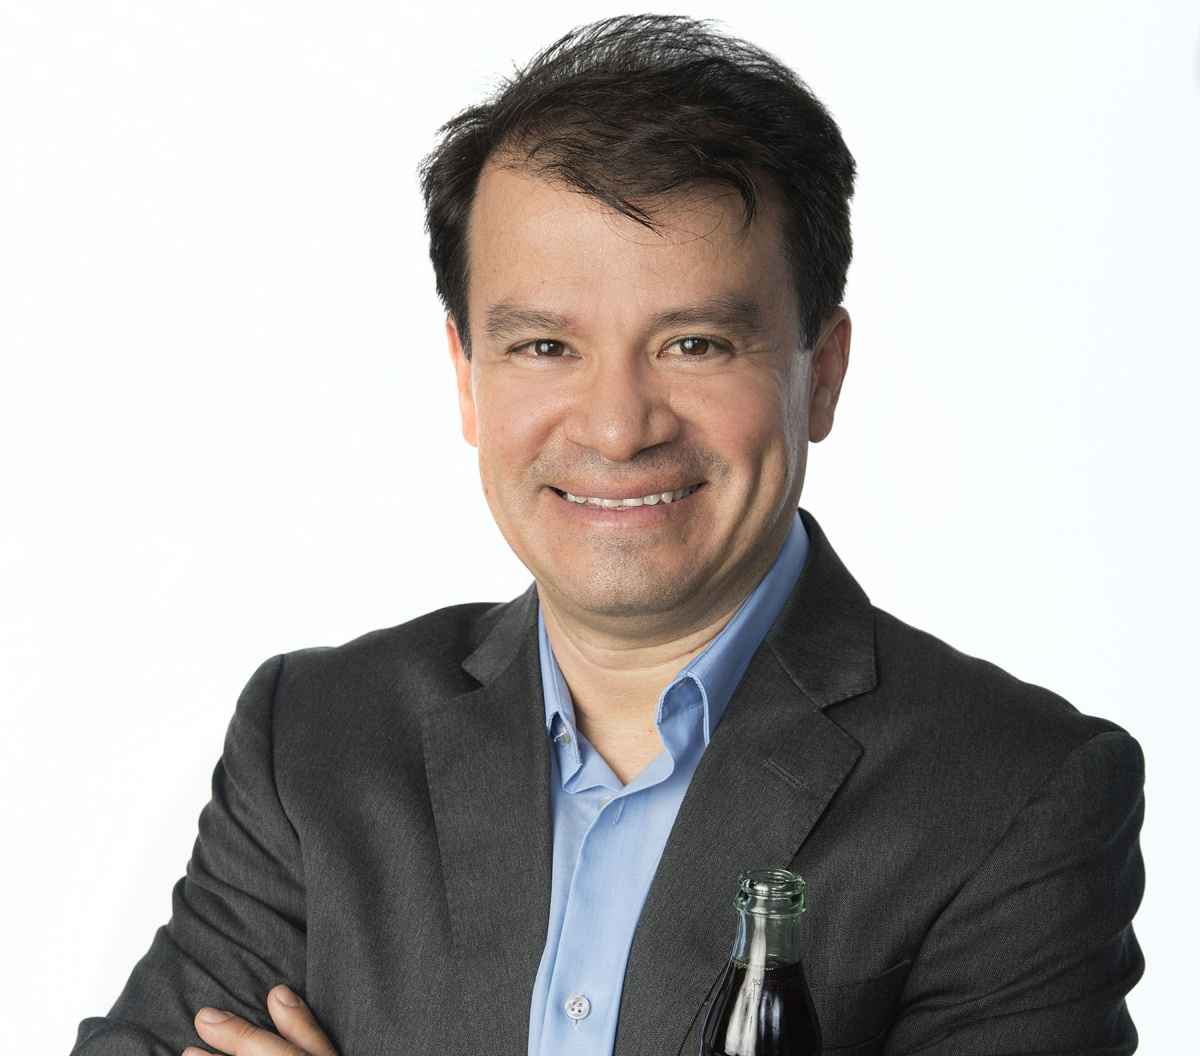 Portada de Javier Meza, VP de Marketing de Coca-Cola Latinoamérica: "Vamos a tener un equipo de marketing latinoamericano integrado"